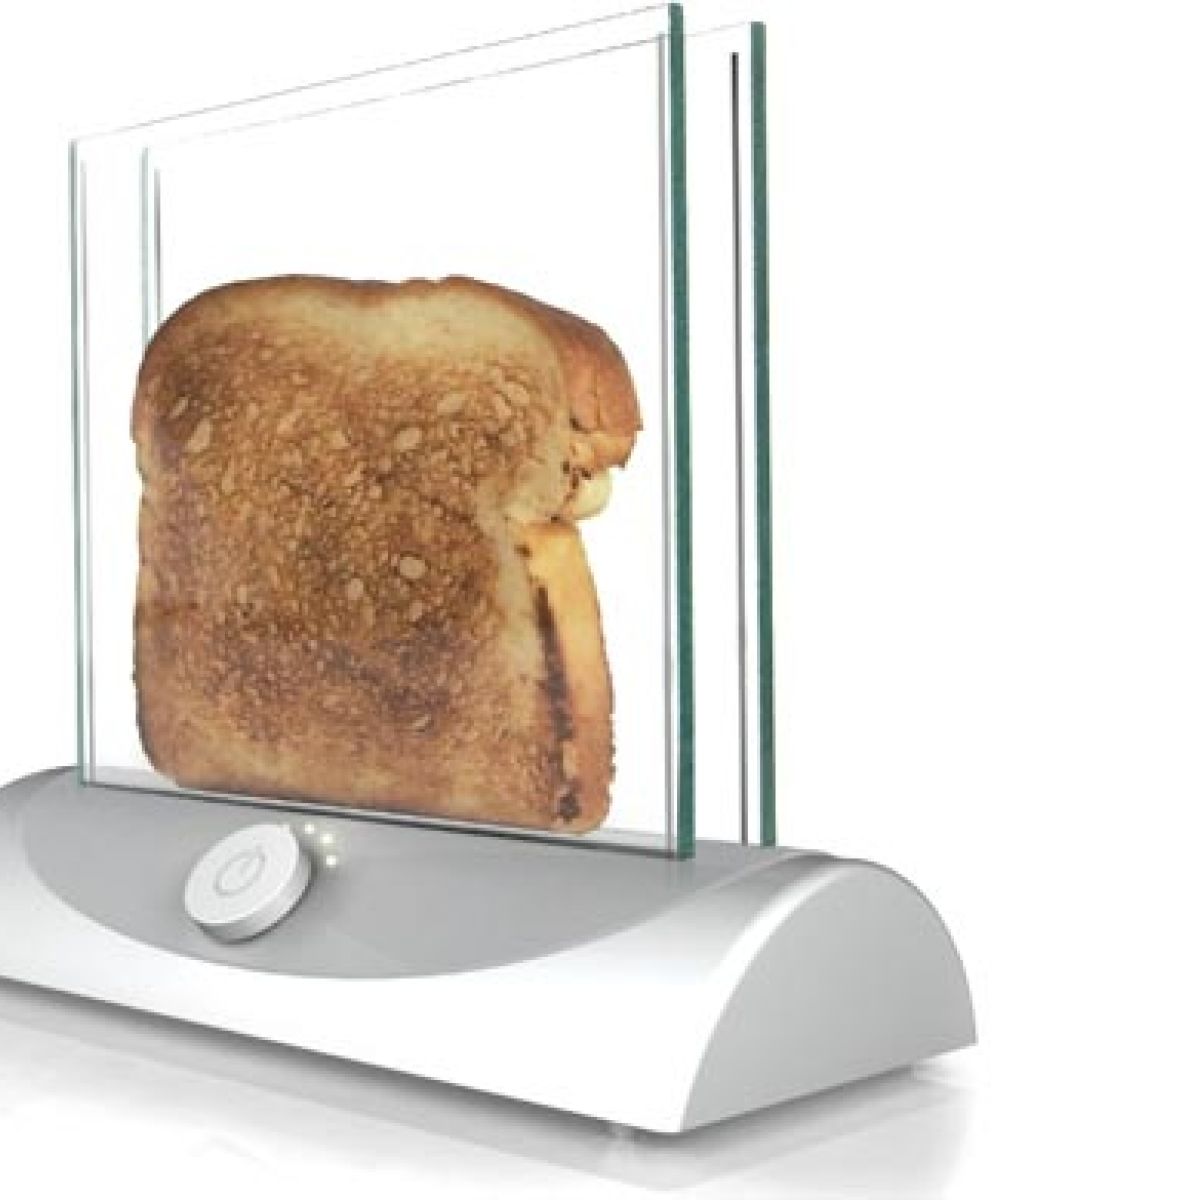 Transparentny toster